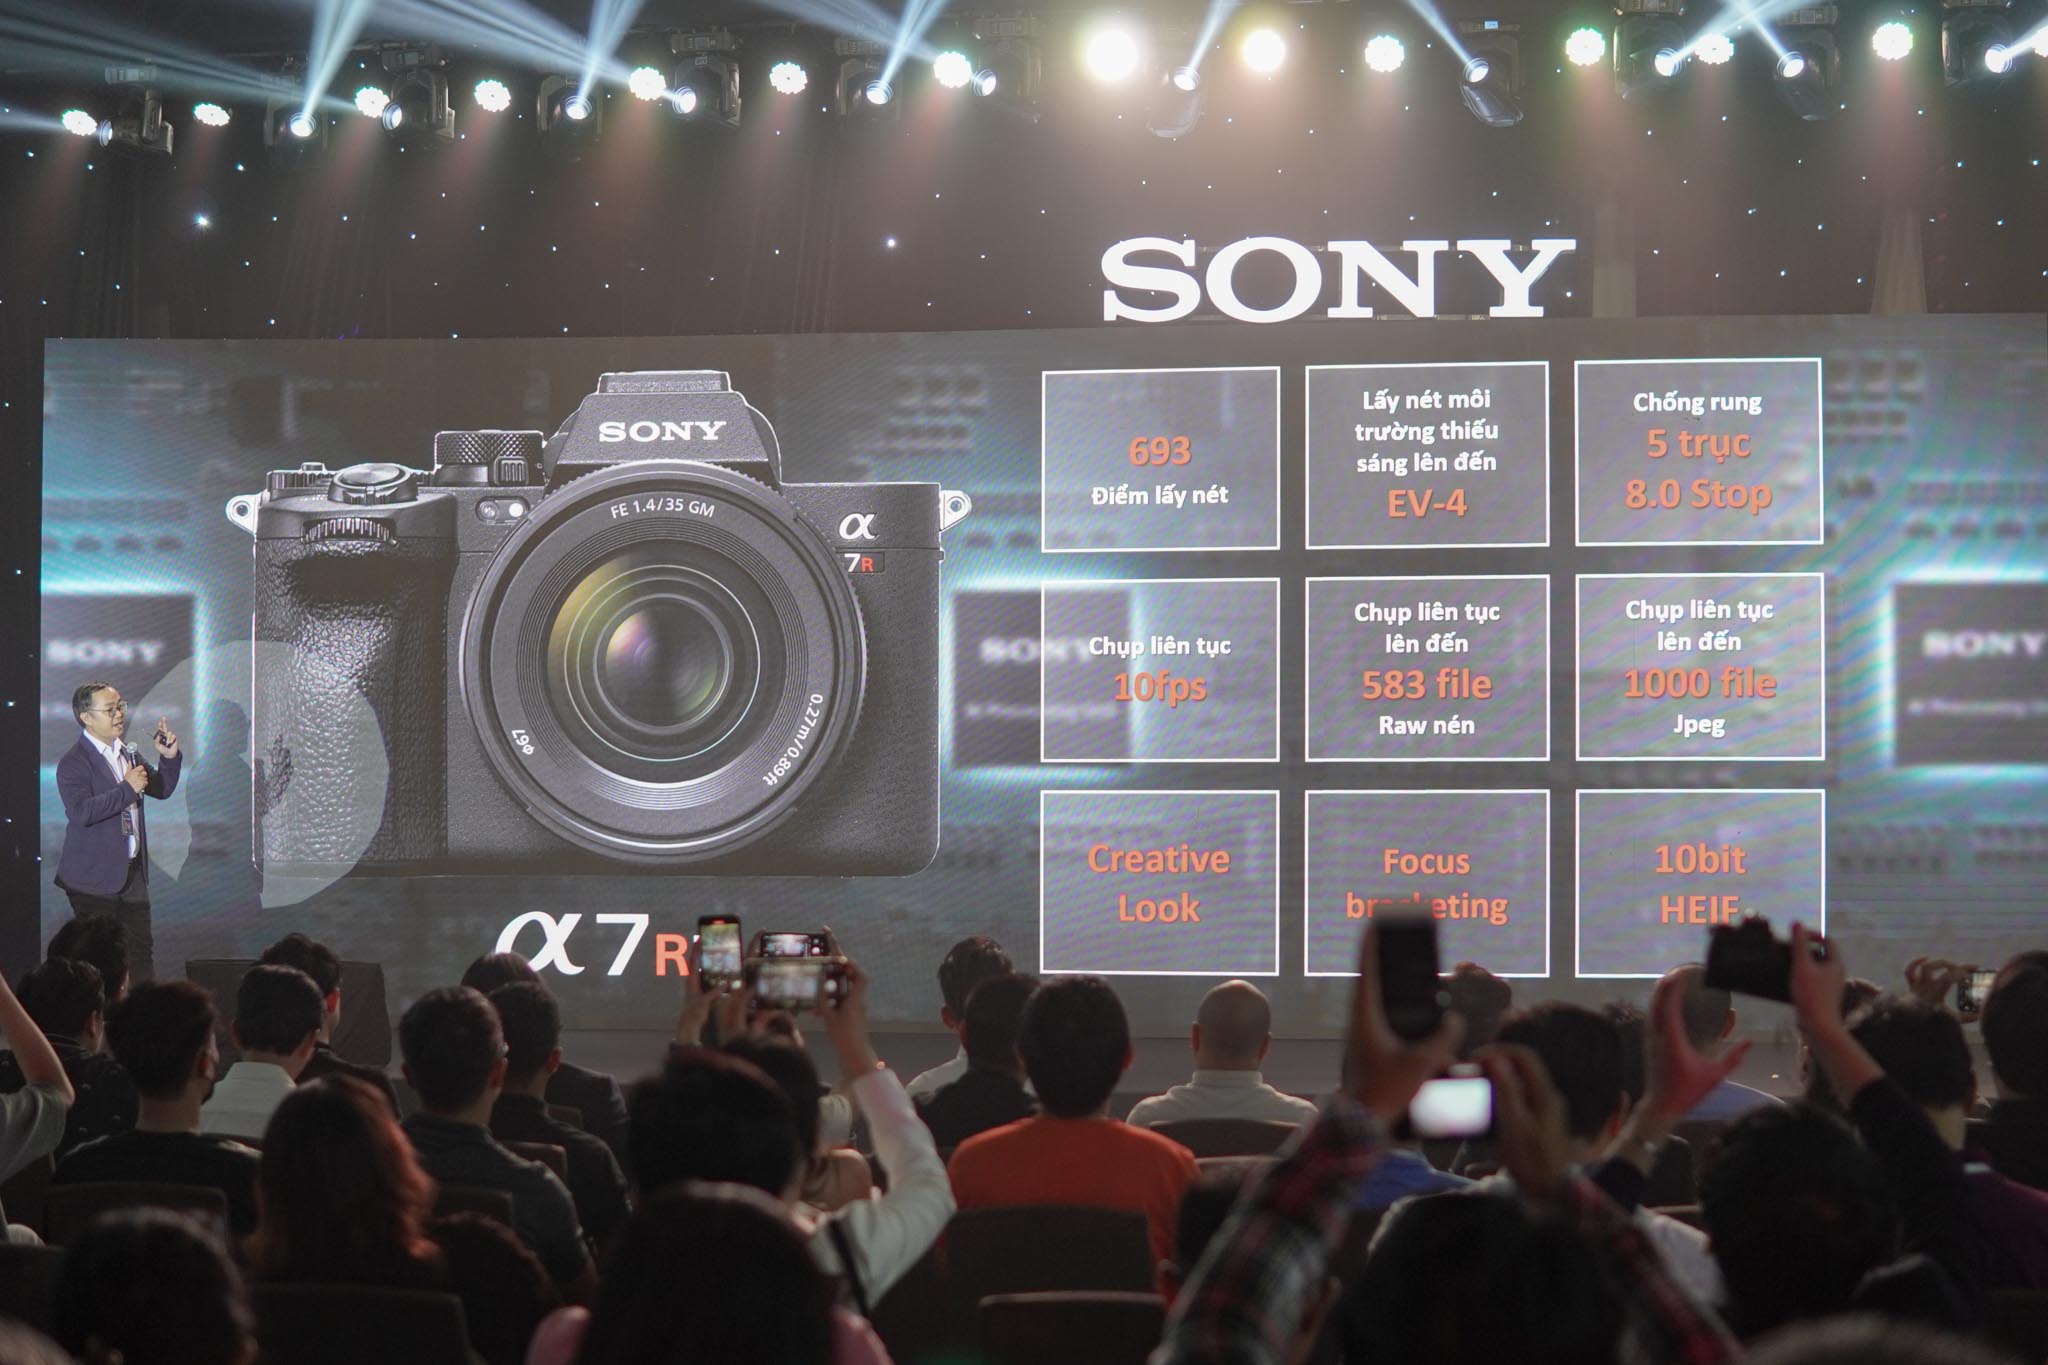 Sony ra mắt Alpha 7R V tại Việt Nam, tích hợp trí thông minh nhân tạo Al giúp nâng cao chất lượng hình ảnh